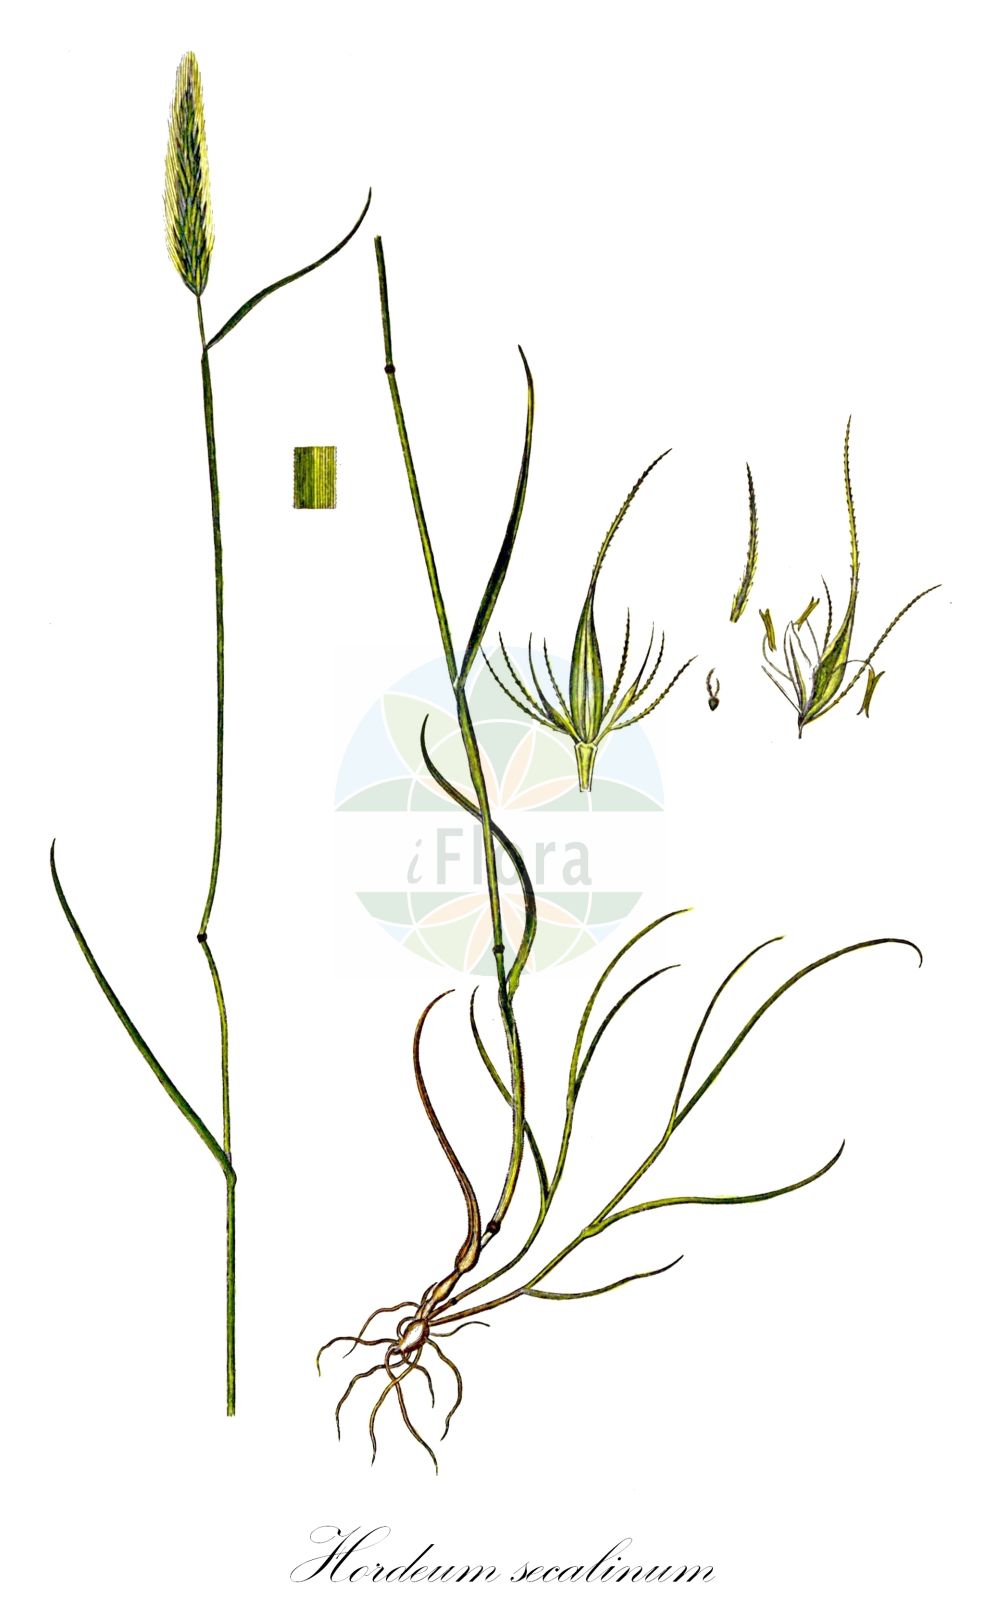 Historische Abbildung von Hordeum secalinum (Roggen-Gerste - Meadow Barley). Das Bild zeigt Blatt, Bluete, Frucht und Same. ---- Historical Drawing of Hordeum secalinum (Roggen-Gerste - Meadow Barley). The image is showing leaf, flower, fruit and seed.(Hordeum secalinum,Roggen-Gerste,Meadow Barley,Hordeum pratense,Hordeum secalinum,Roggen-Gerste,Gerste,Meadow Barley,Hordeum,Gerste,Barley,Poaceae,Süßgräser,Grass family,Blatt,Bluete,Frucht,Same,leaf,flower,fruit,seed,Oeder (1761-1883))